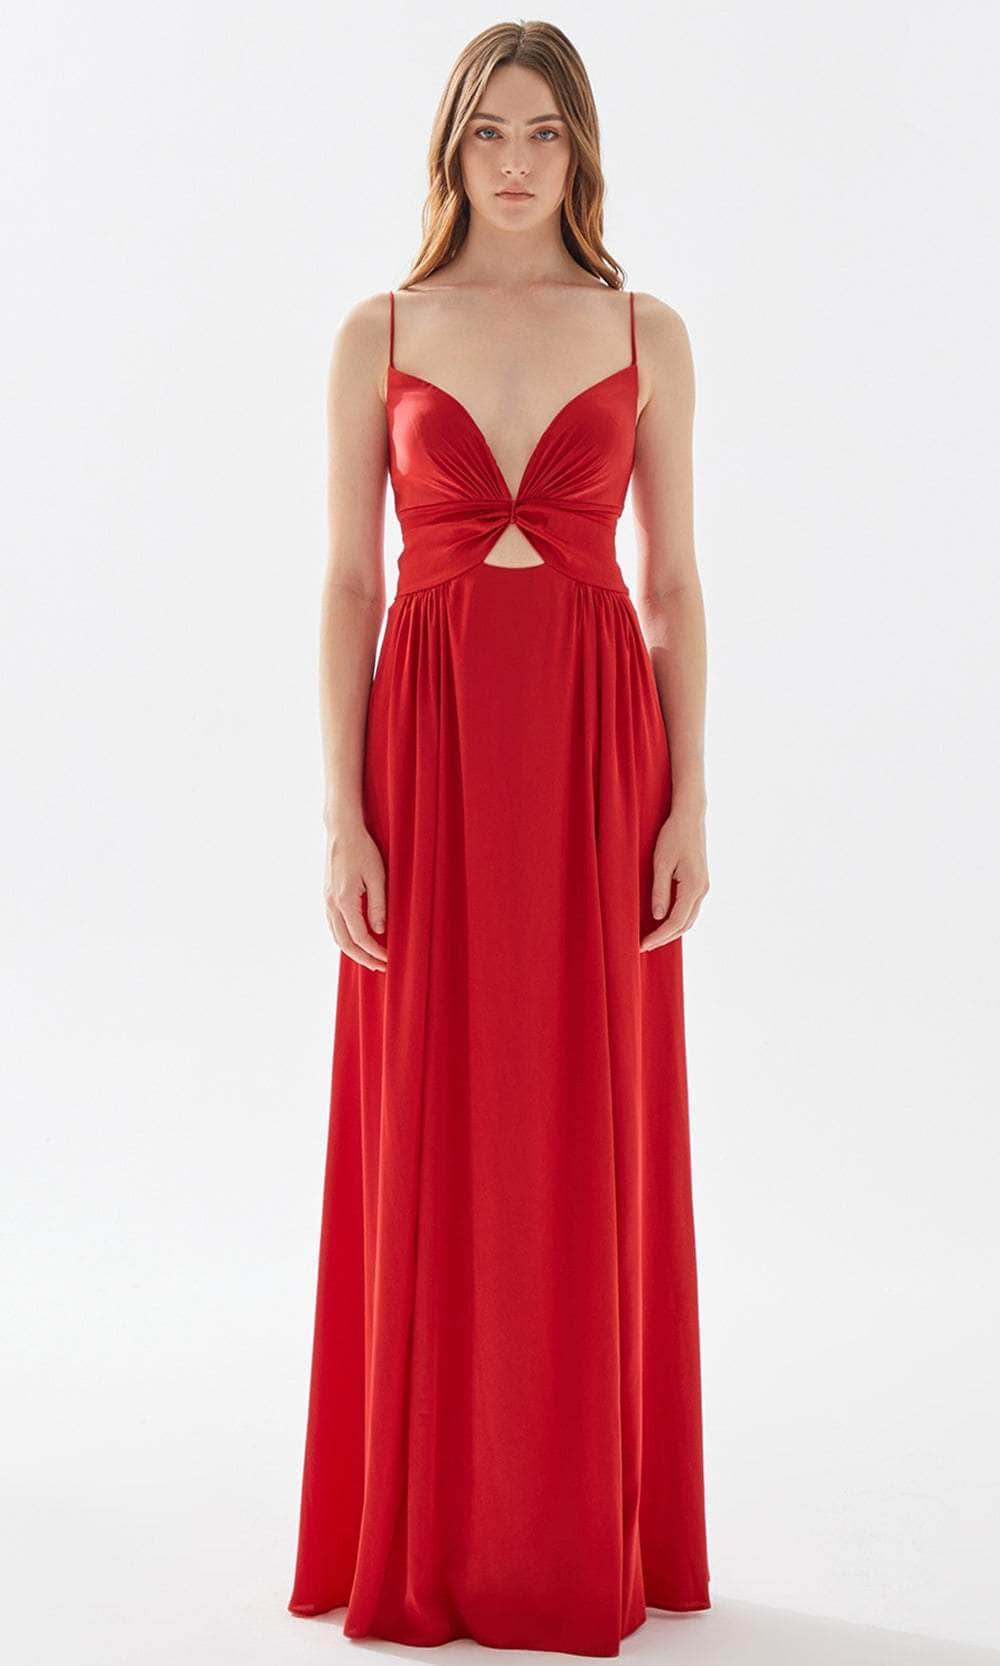 Tarik Ediz 52005 - Butterfly Motif A-line Soft Dress Evening Dresses 00 / Red